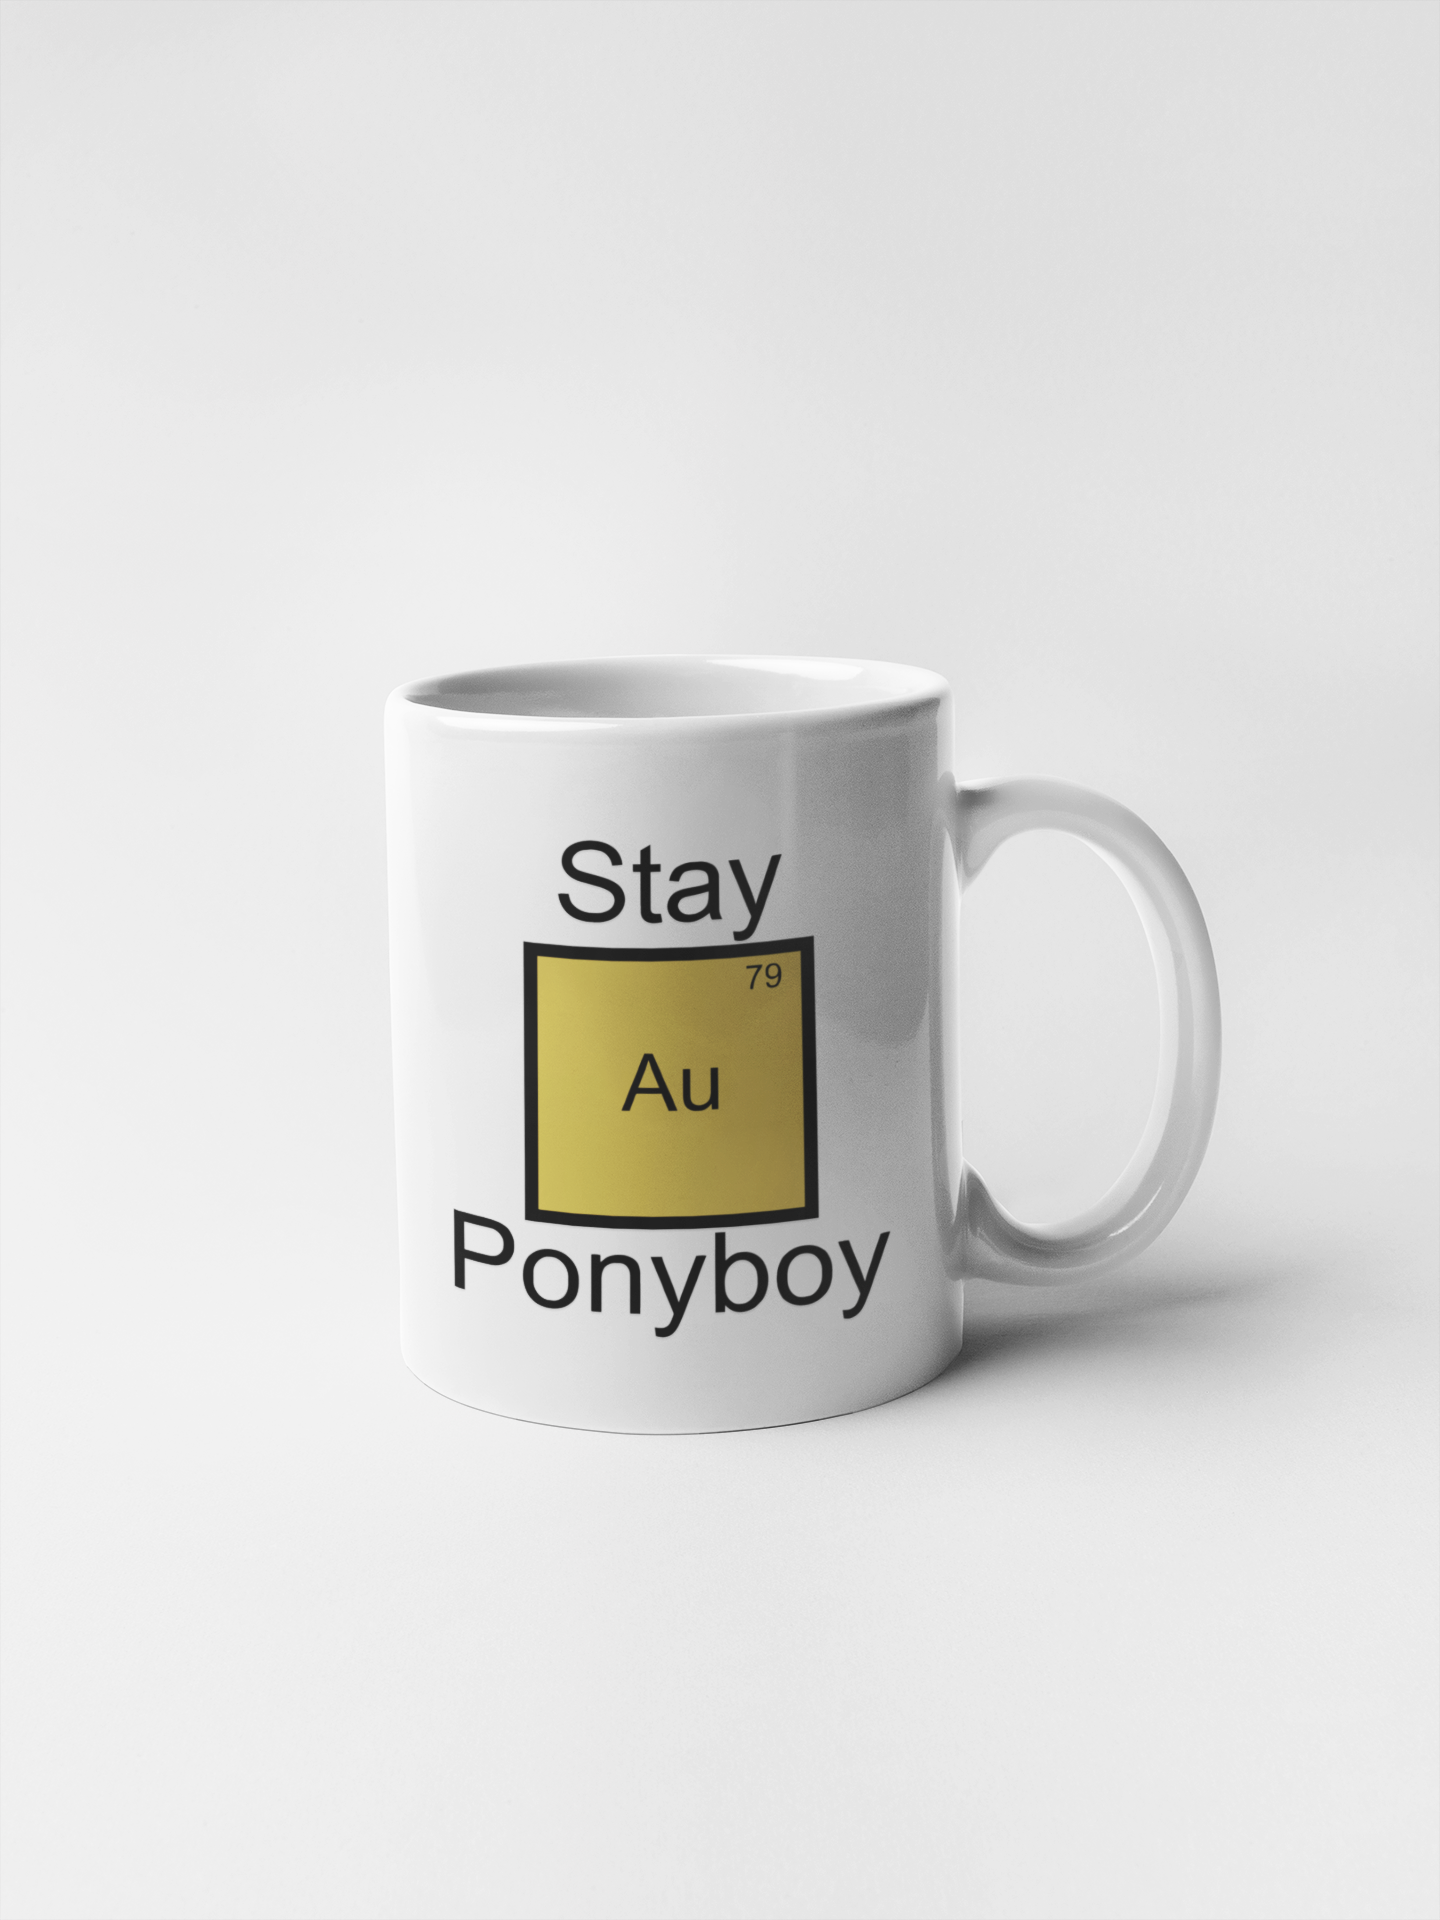 Stay Gold Ponyboy Element Pun Ceramic Coffee Mugs